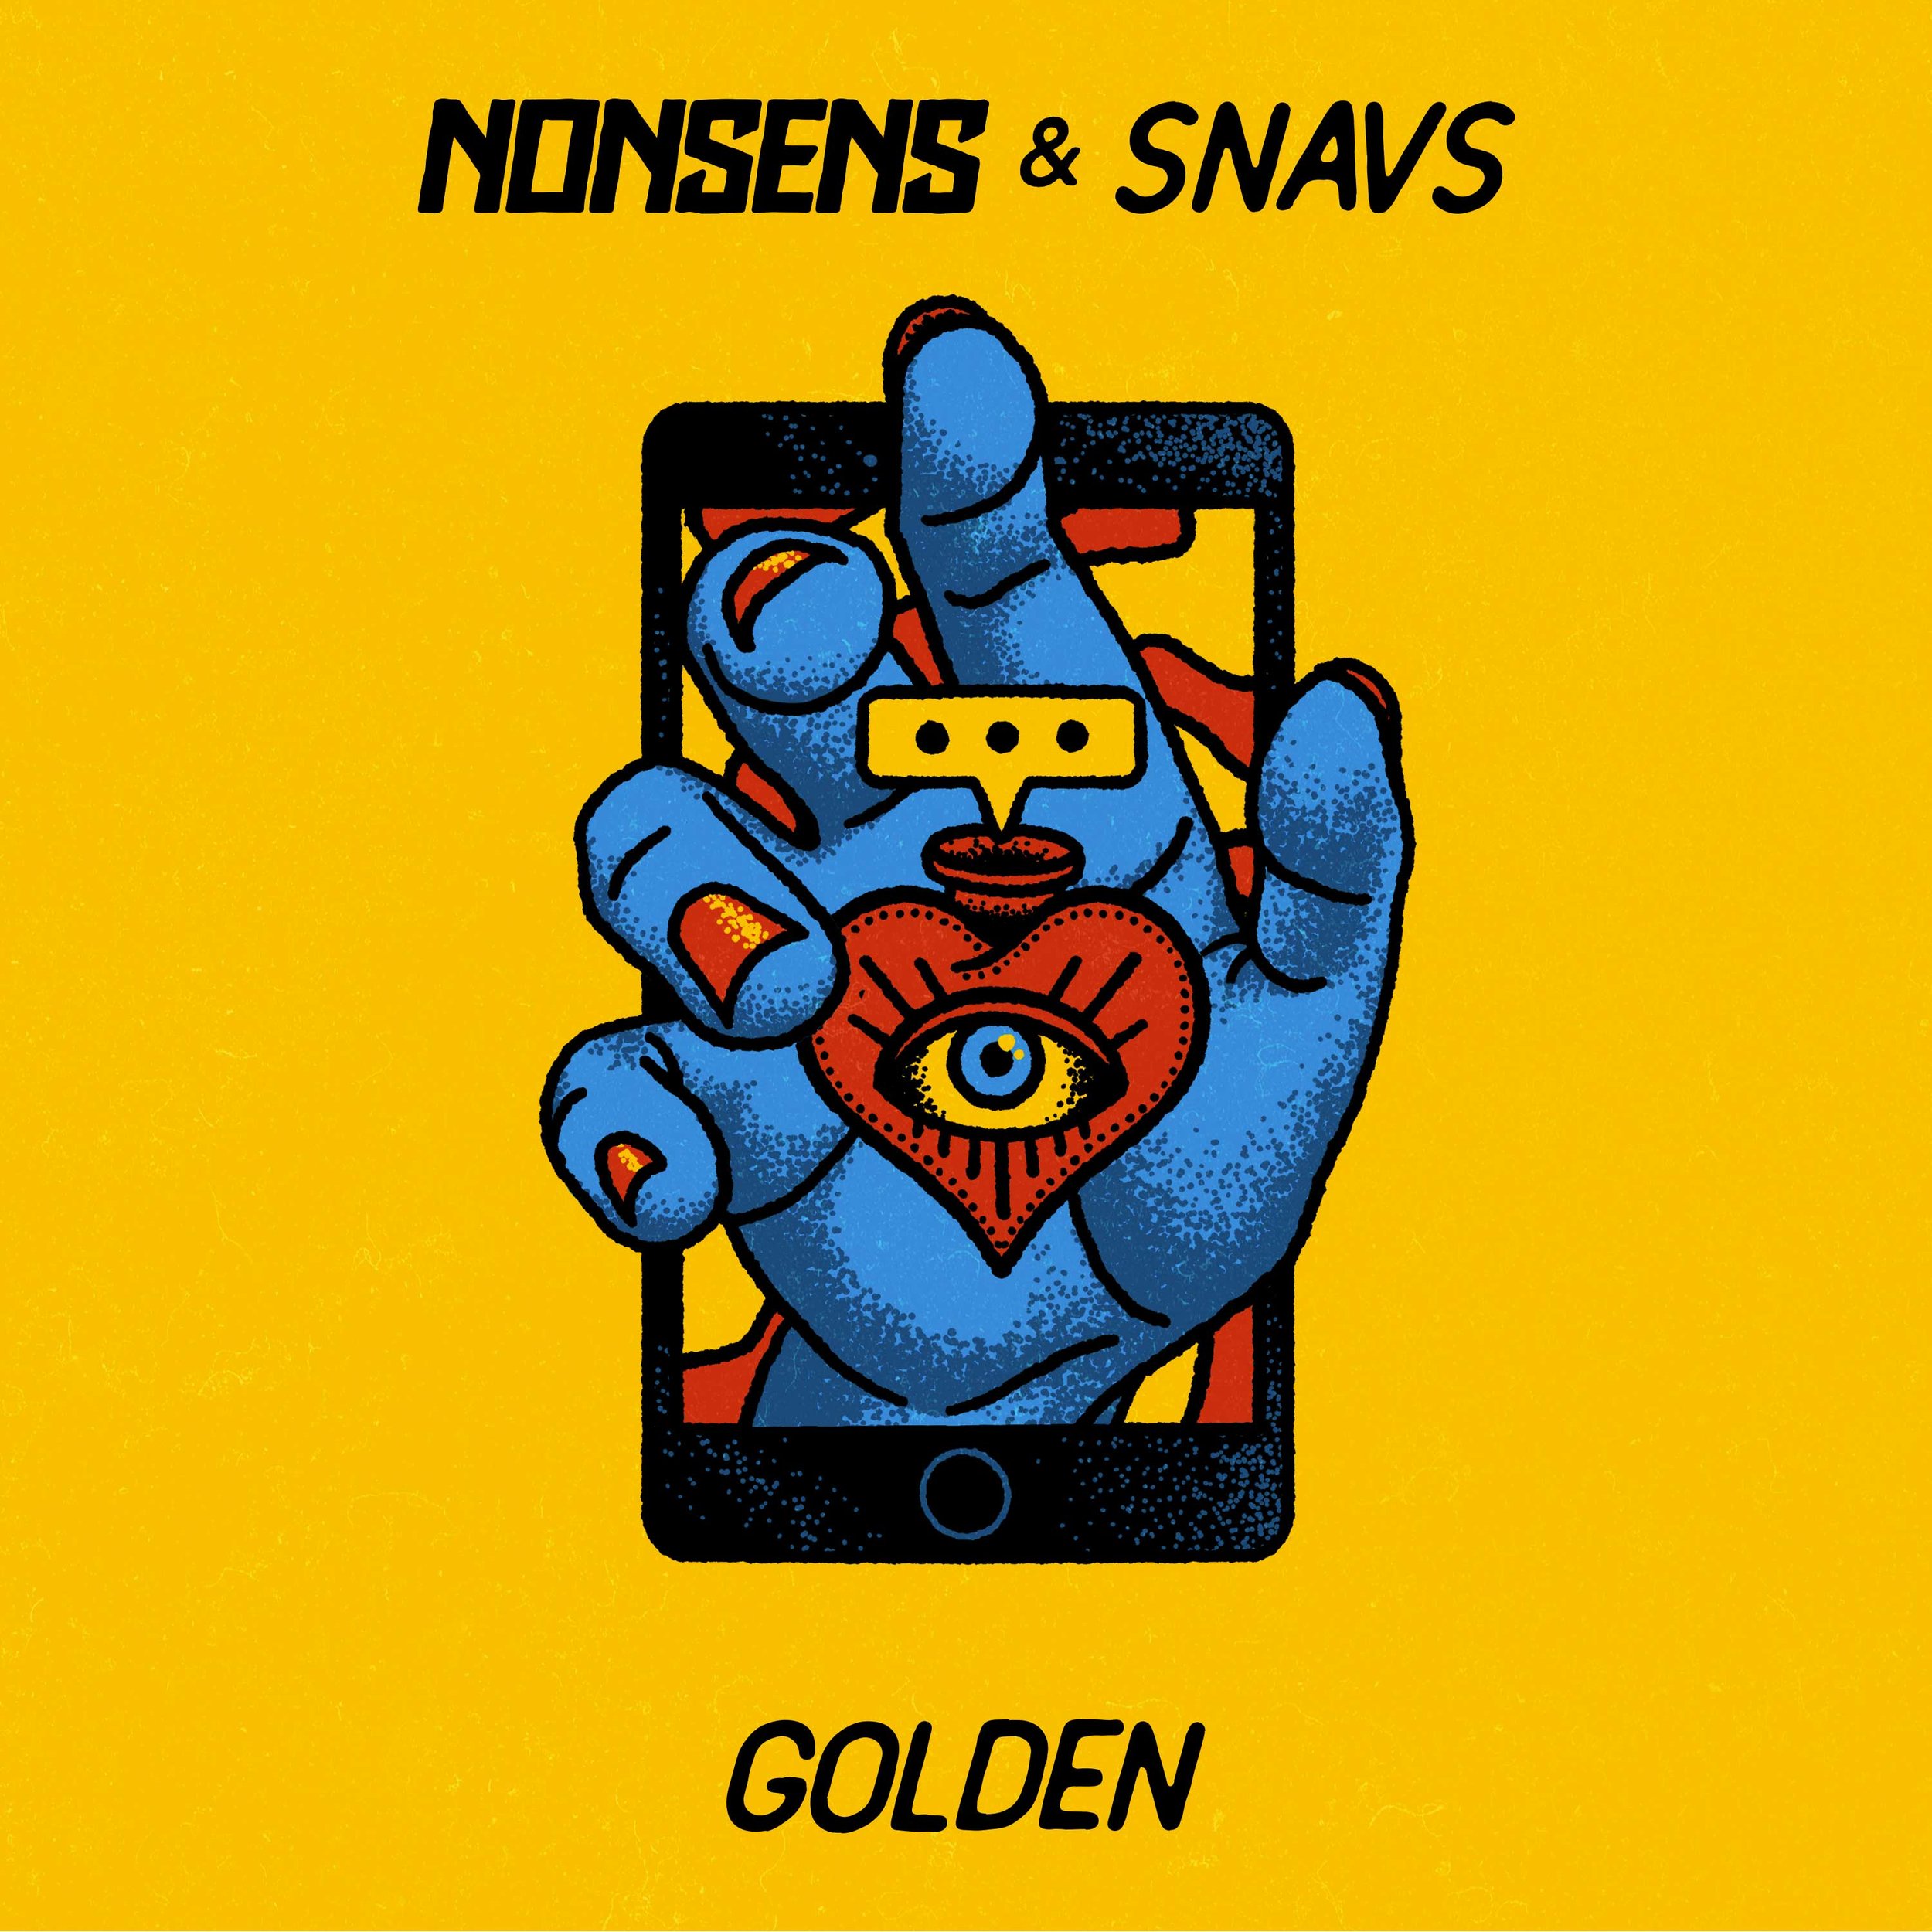 Monstercat-Template-Nonsens-&-SNAVS-Golden-small.jpg